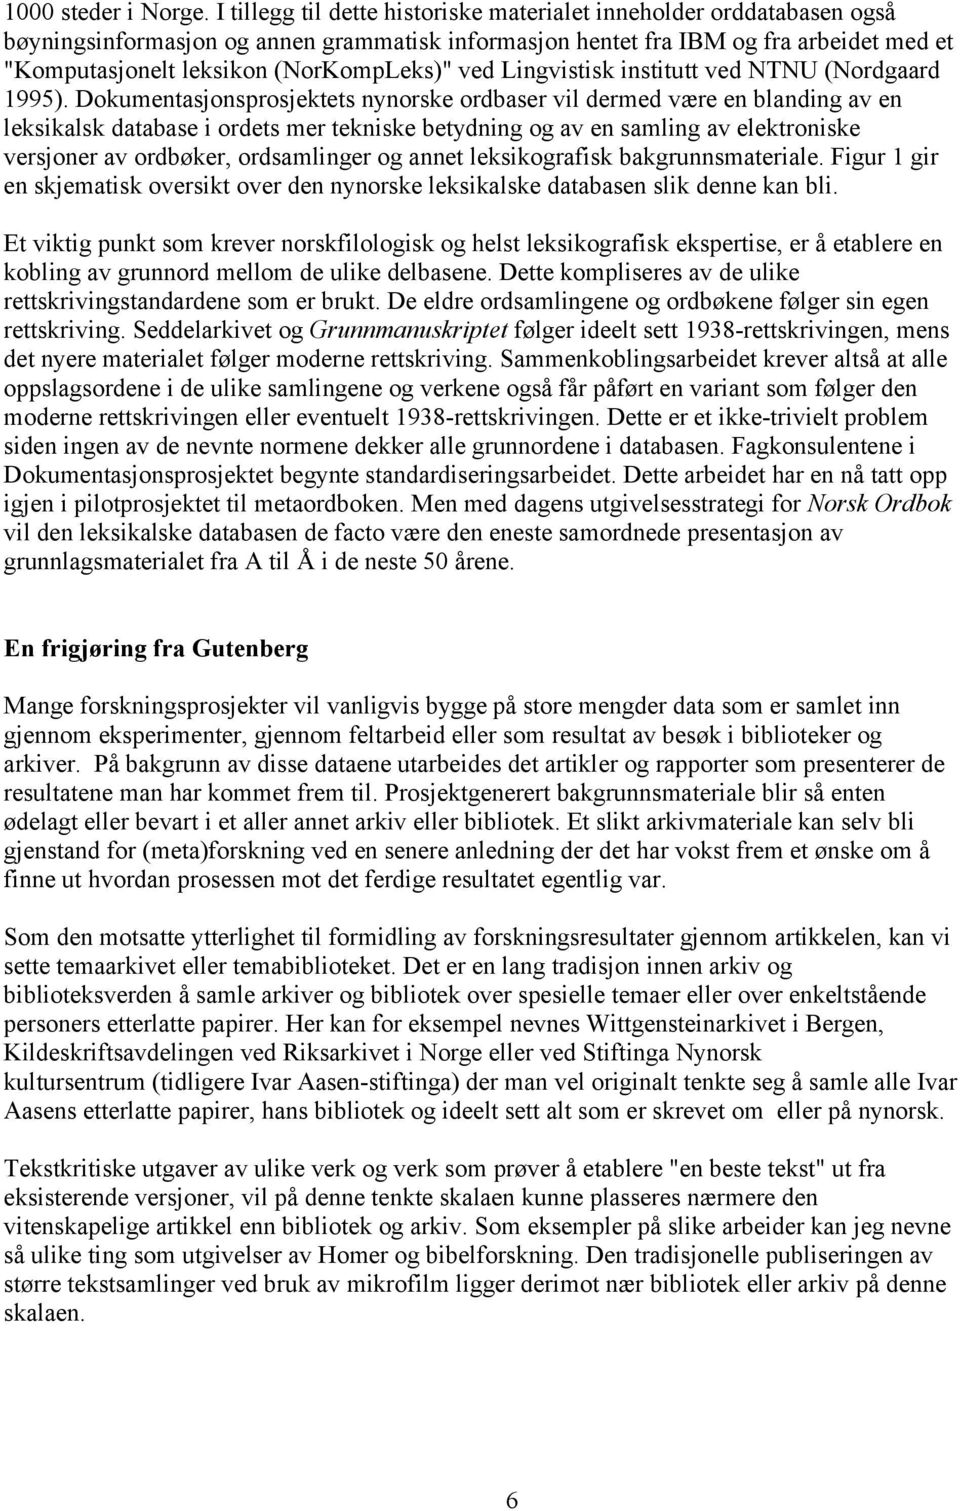 (NorKompLeks)" ved Lingvistisk institutt ved NTNU (Nordgaard 1995).